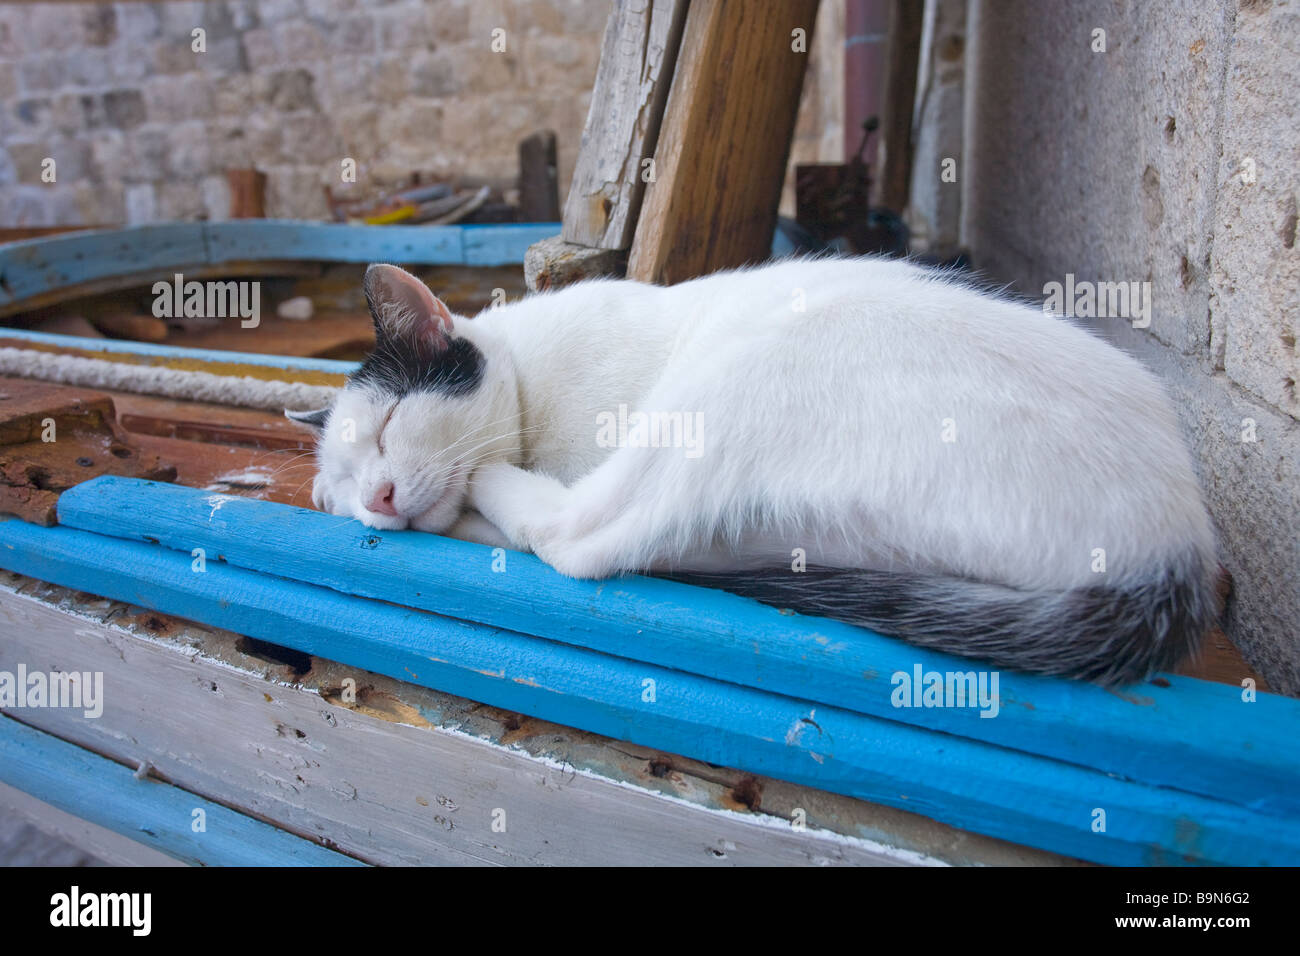 Cat nap in dubrovnik harbour harbor sleeping asleep Stock Photo